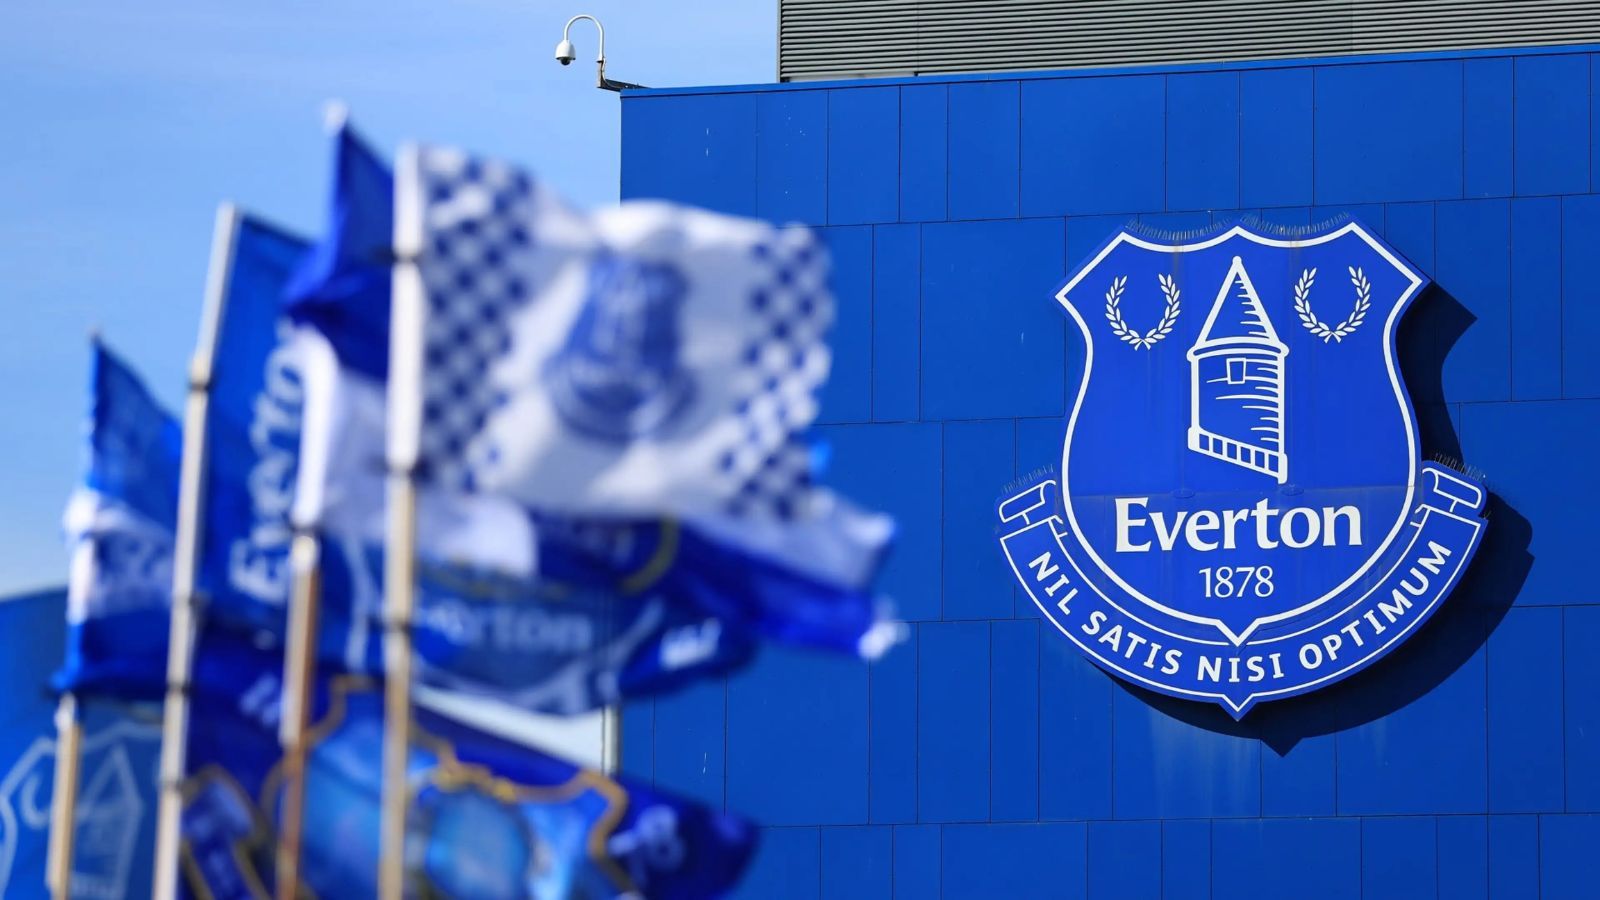 OFICIAL: El Everton tiene nuevo dueño